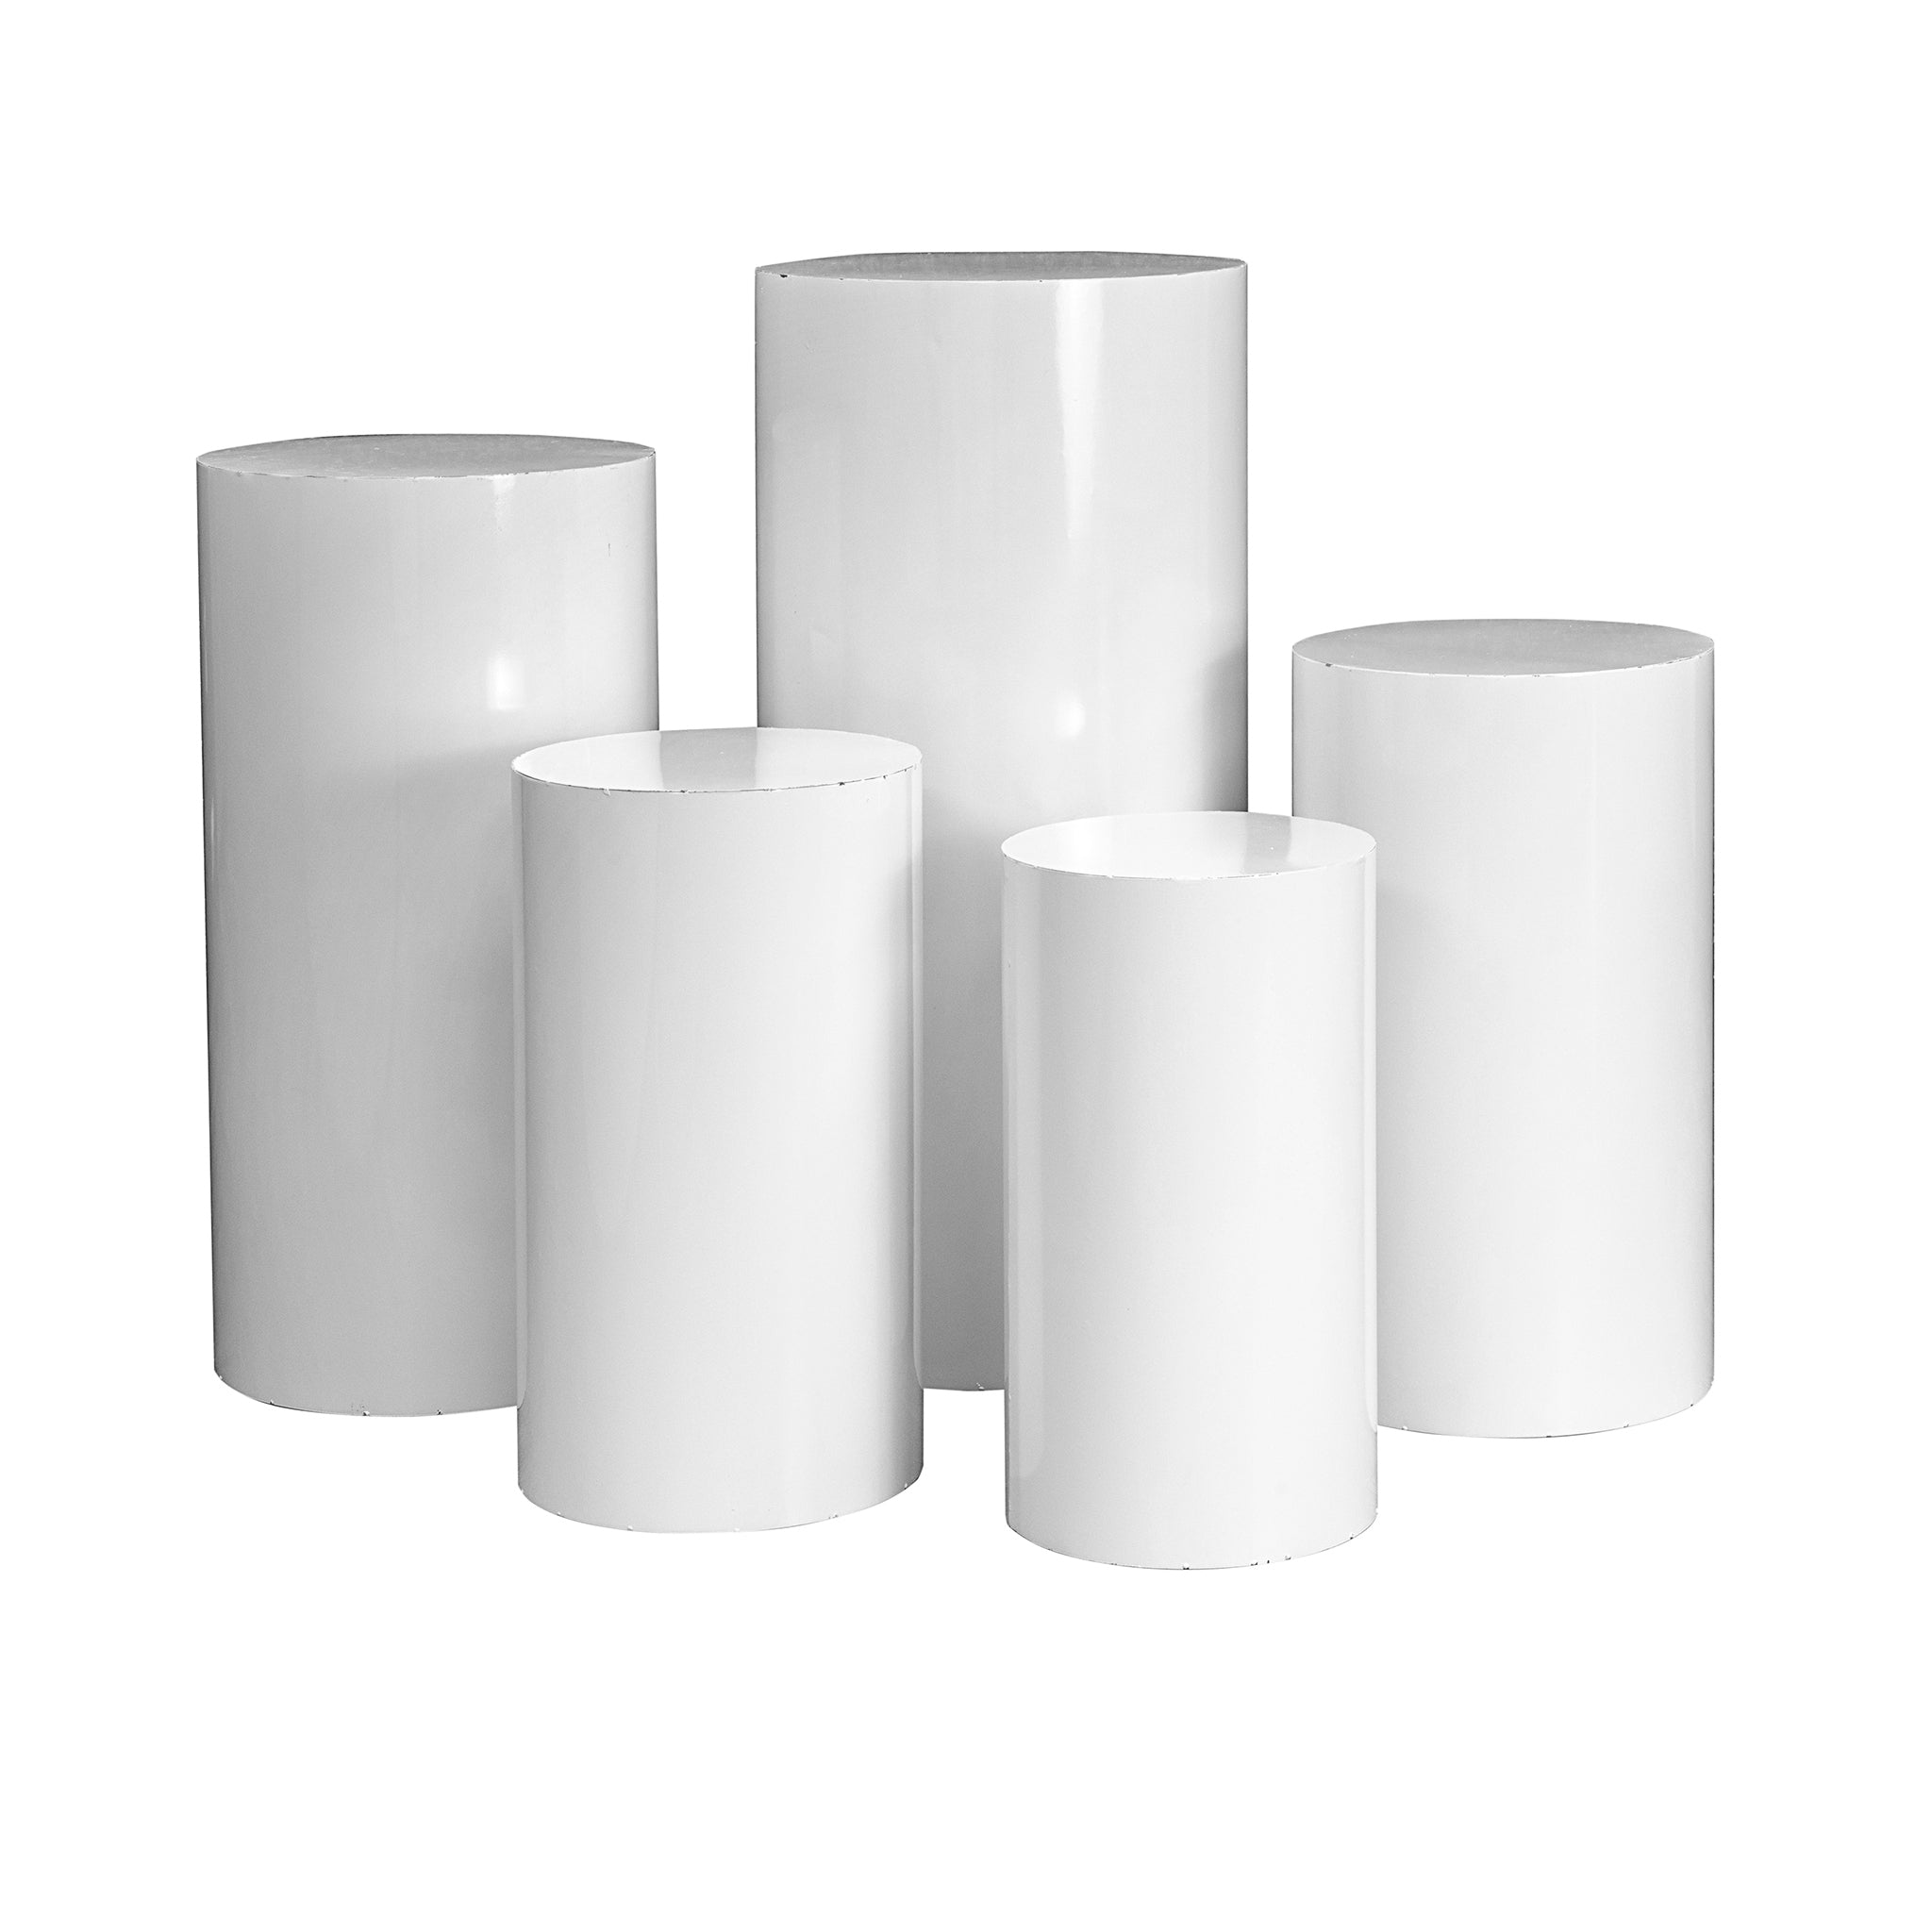 Square Metal Pillar Pedestal Display Stands 5 pcs/set - White– CV